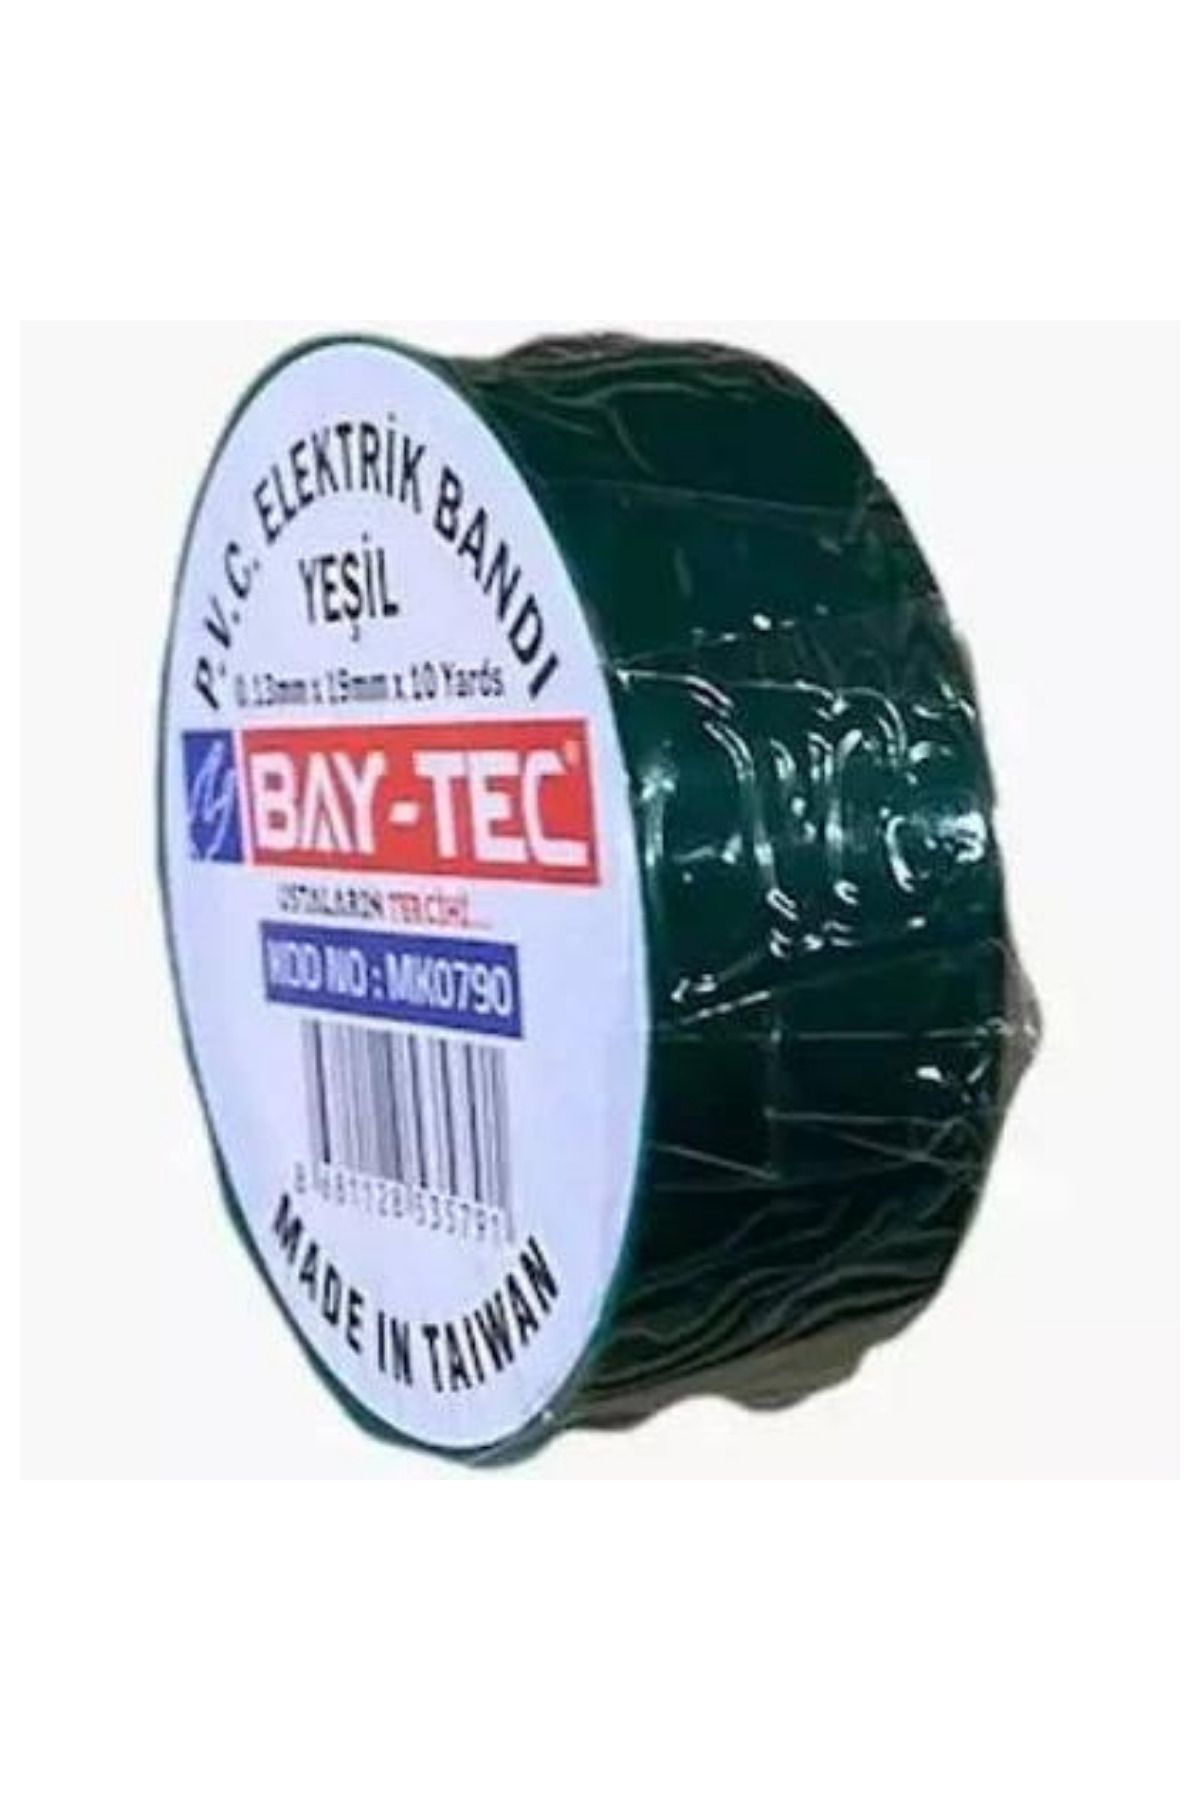 Baytec Bay-tec Elektrik Bandı Yeşil